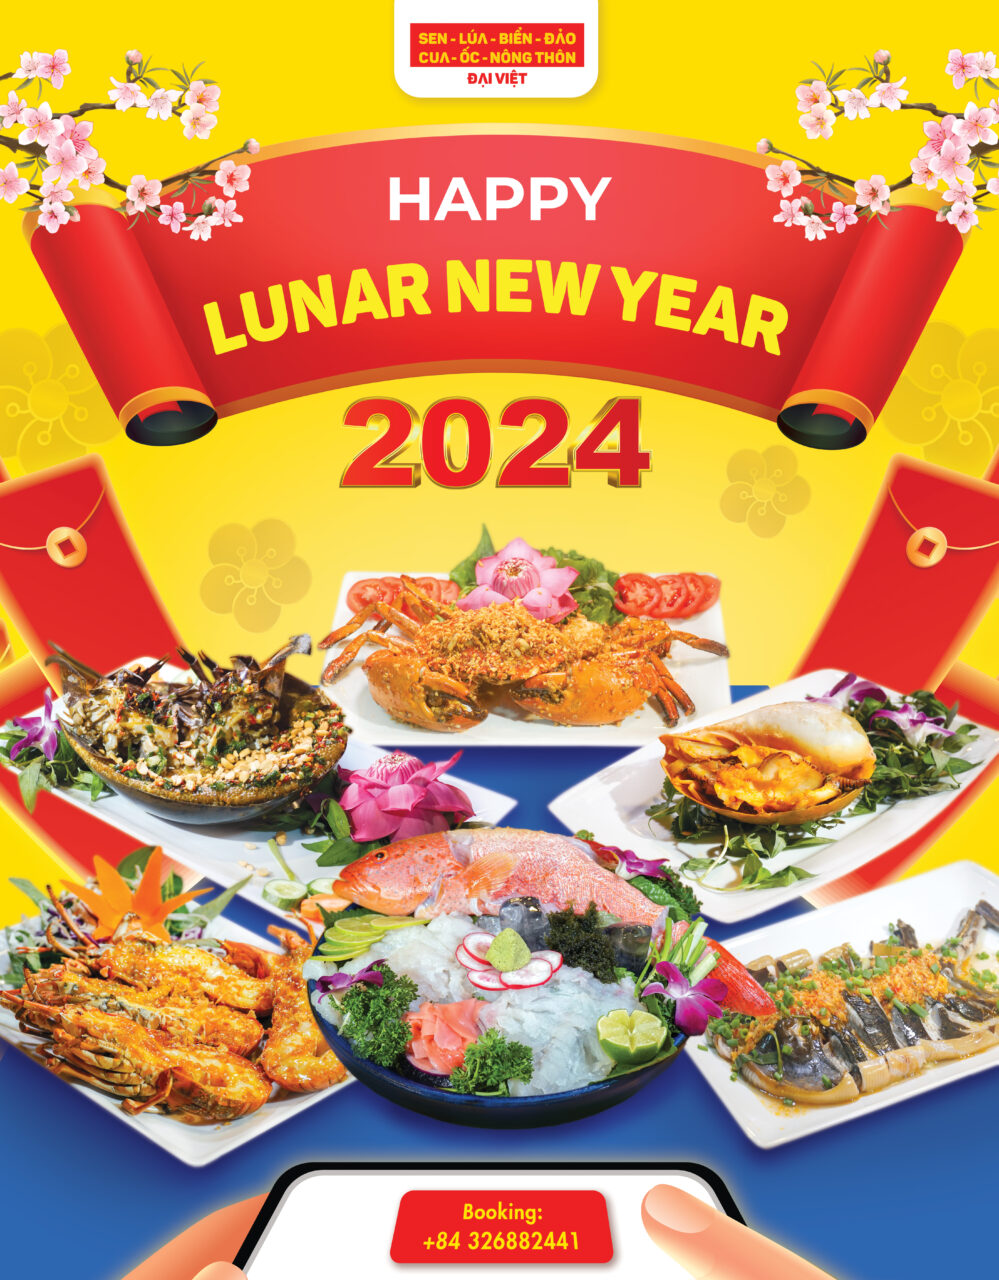 Lunar New Year Vietnam 2024 open 24/7